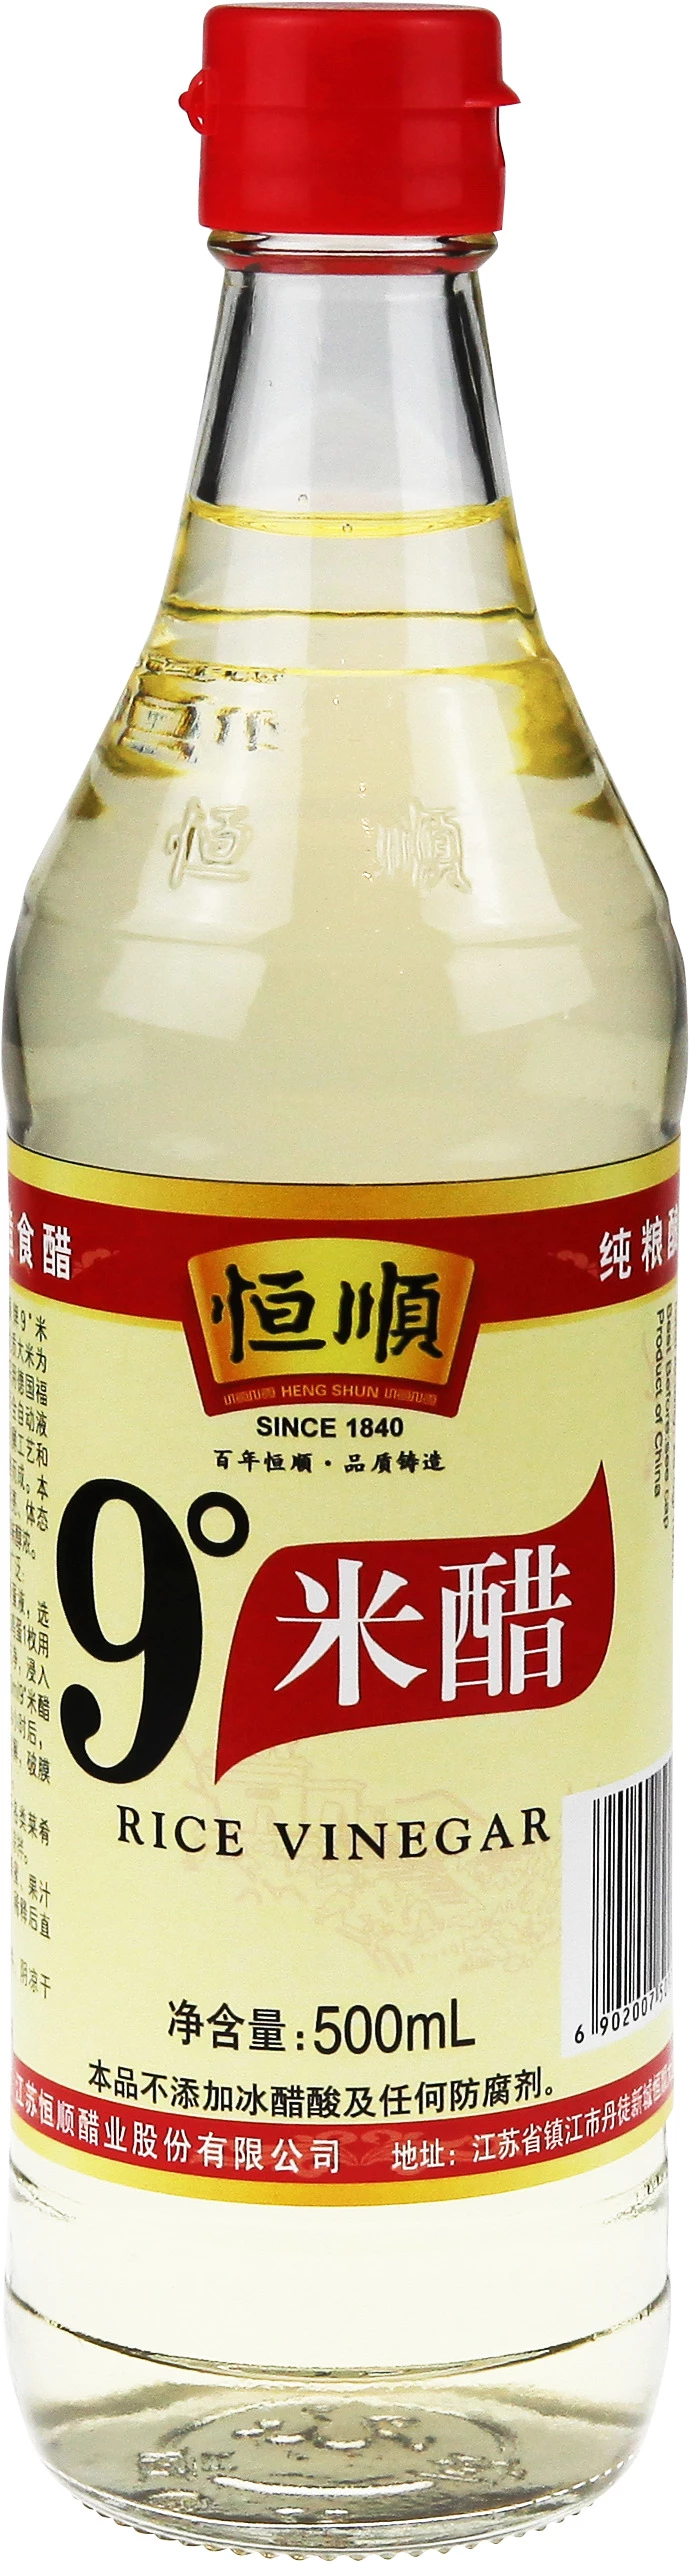 白米醋 12 X 500 毫升 - Heng Shun